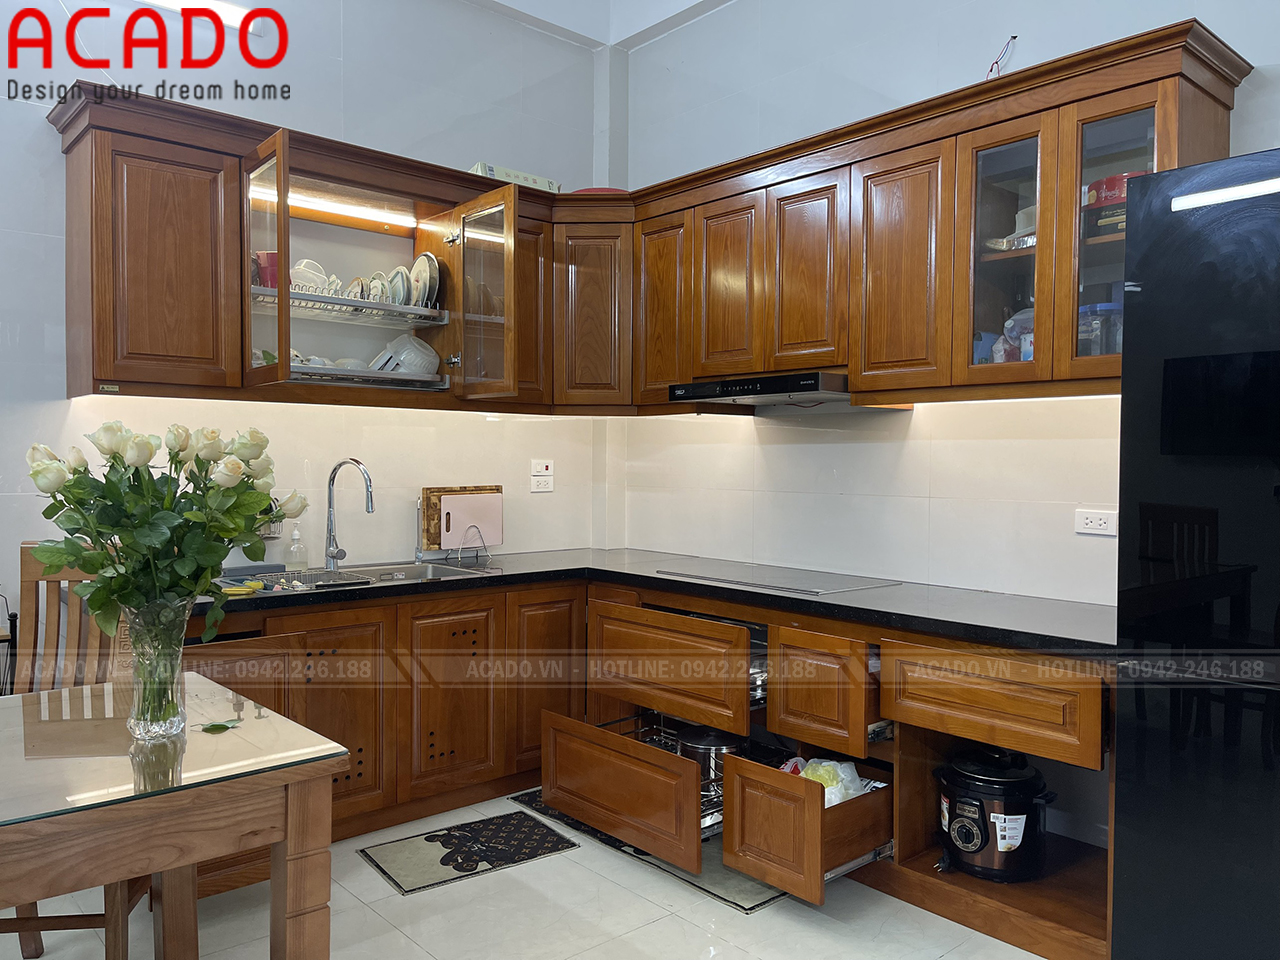 Nội thất ACADO cung cấp giá tủ bếp gỗ xoan đào giá tại xưởng